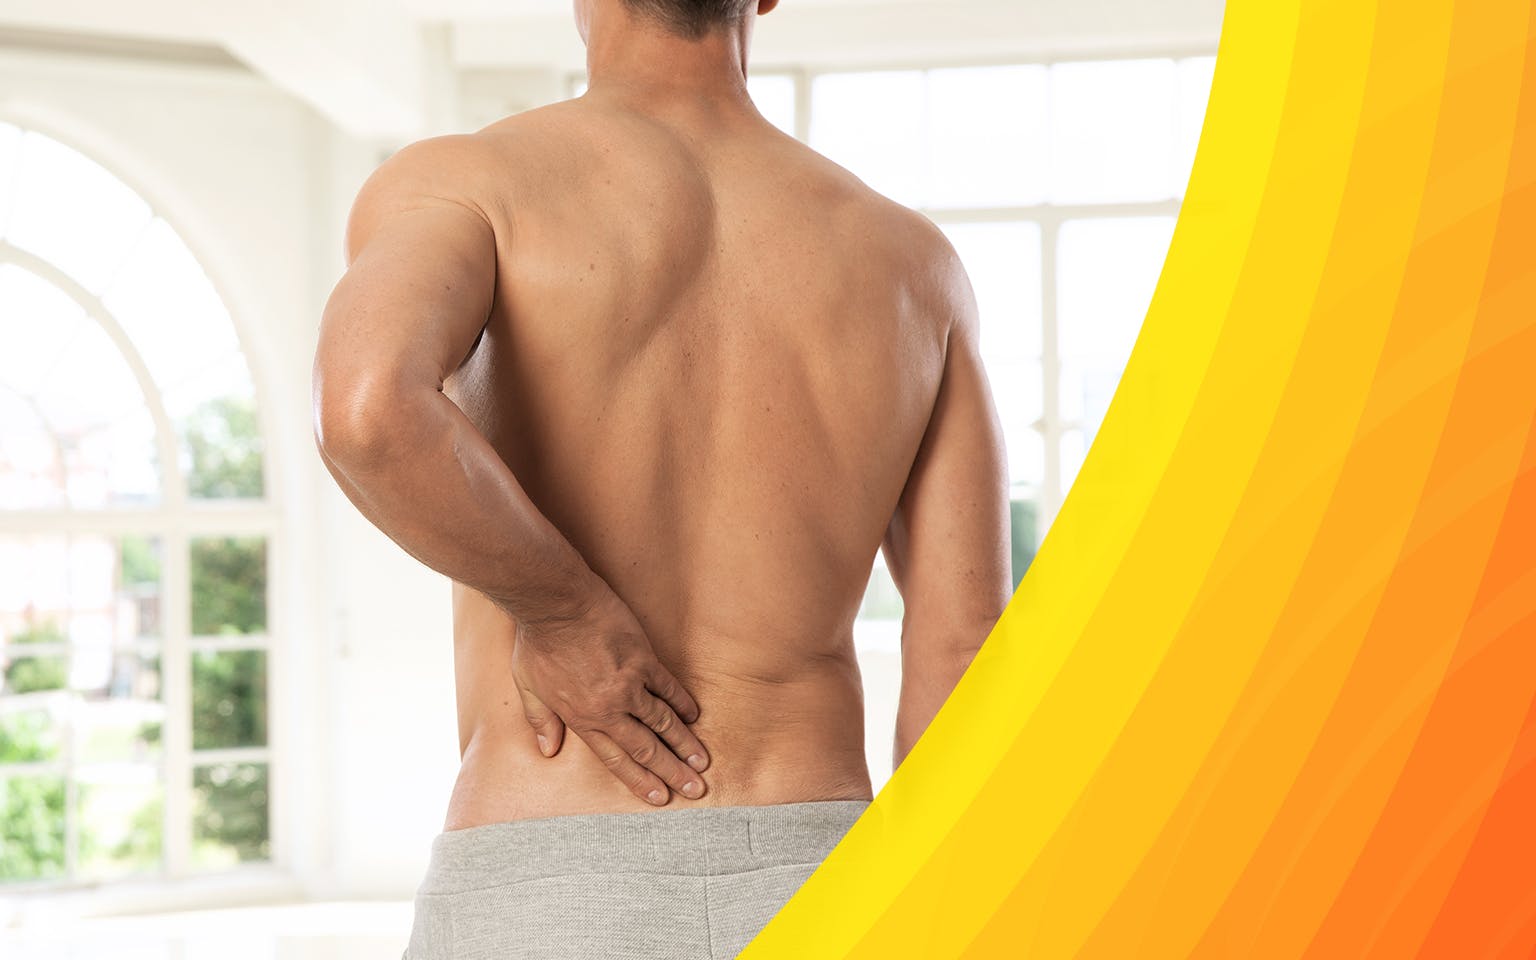 Cuáles son las causas que pueden provocar dolor en la espalda alta